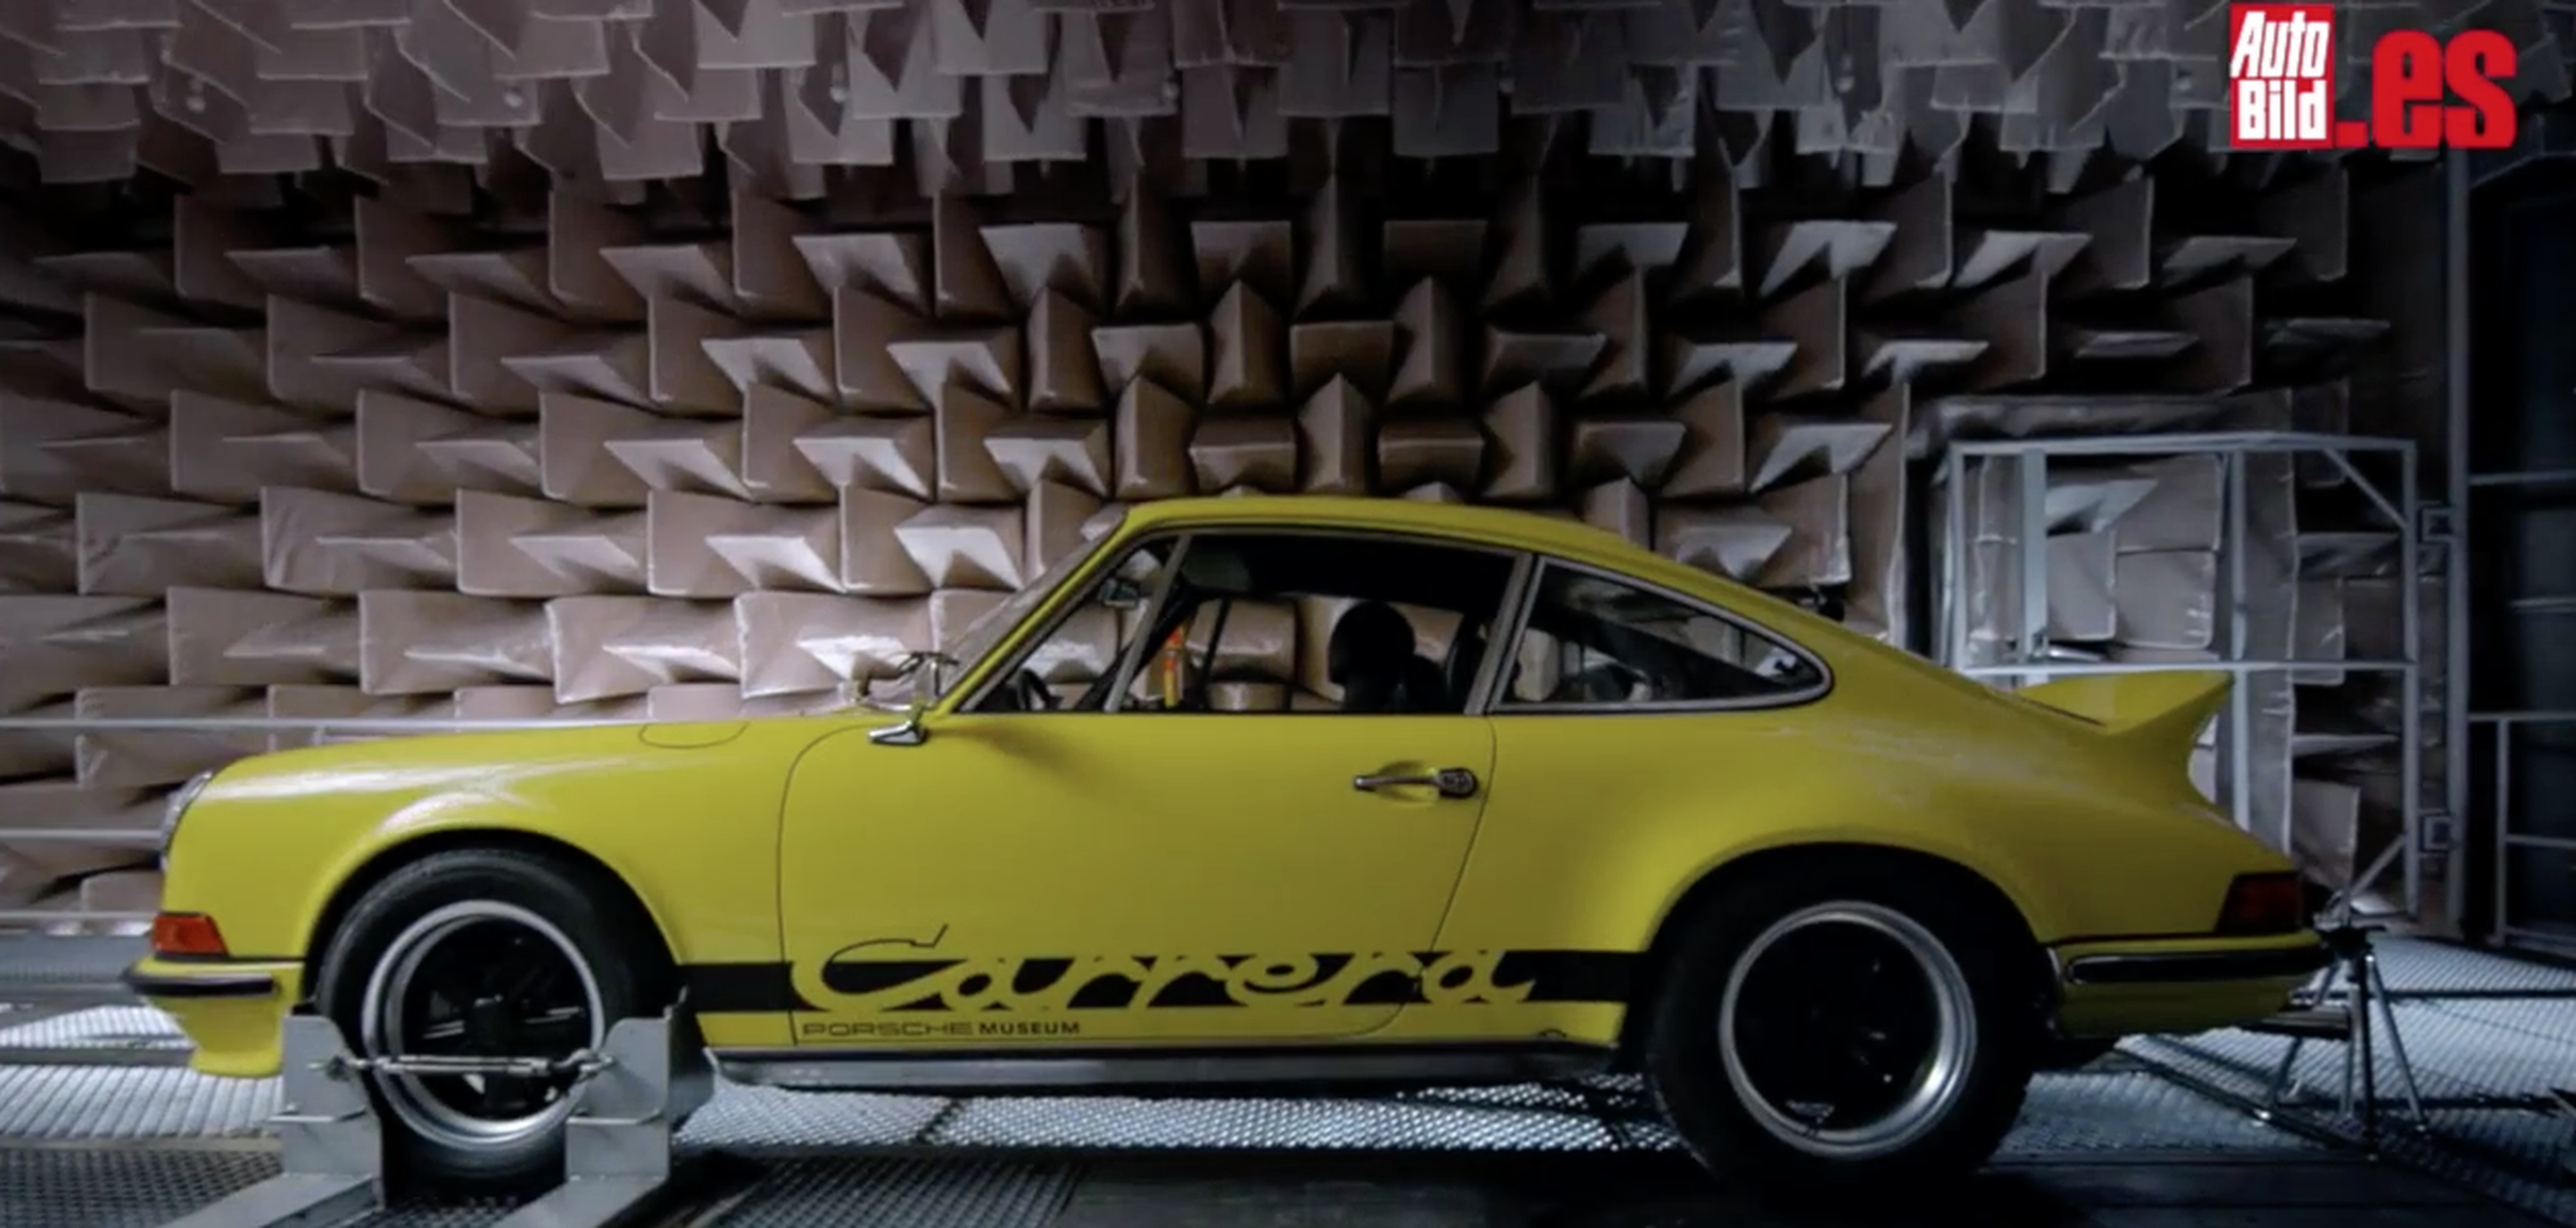 VÍDEO: Los cinco sonidos de Porsche más icónicos